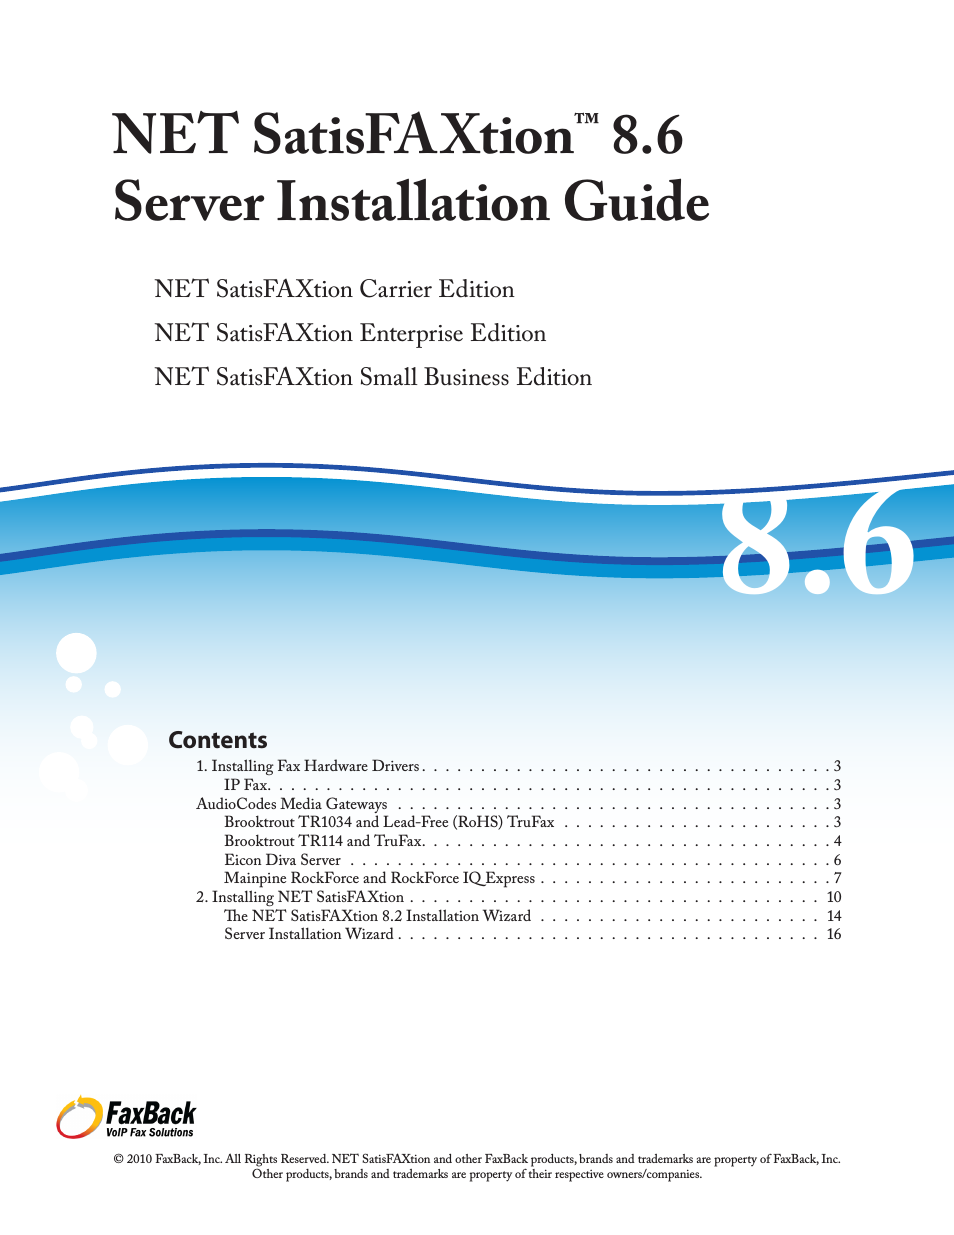 NET SatisFAXtion 8.6 - Installation Guide